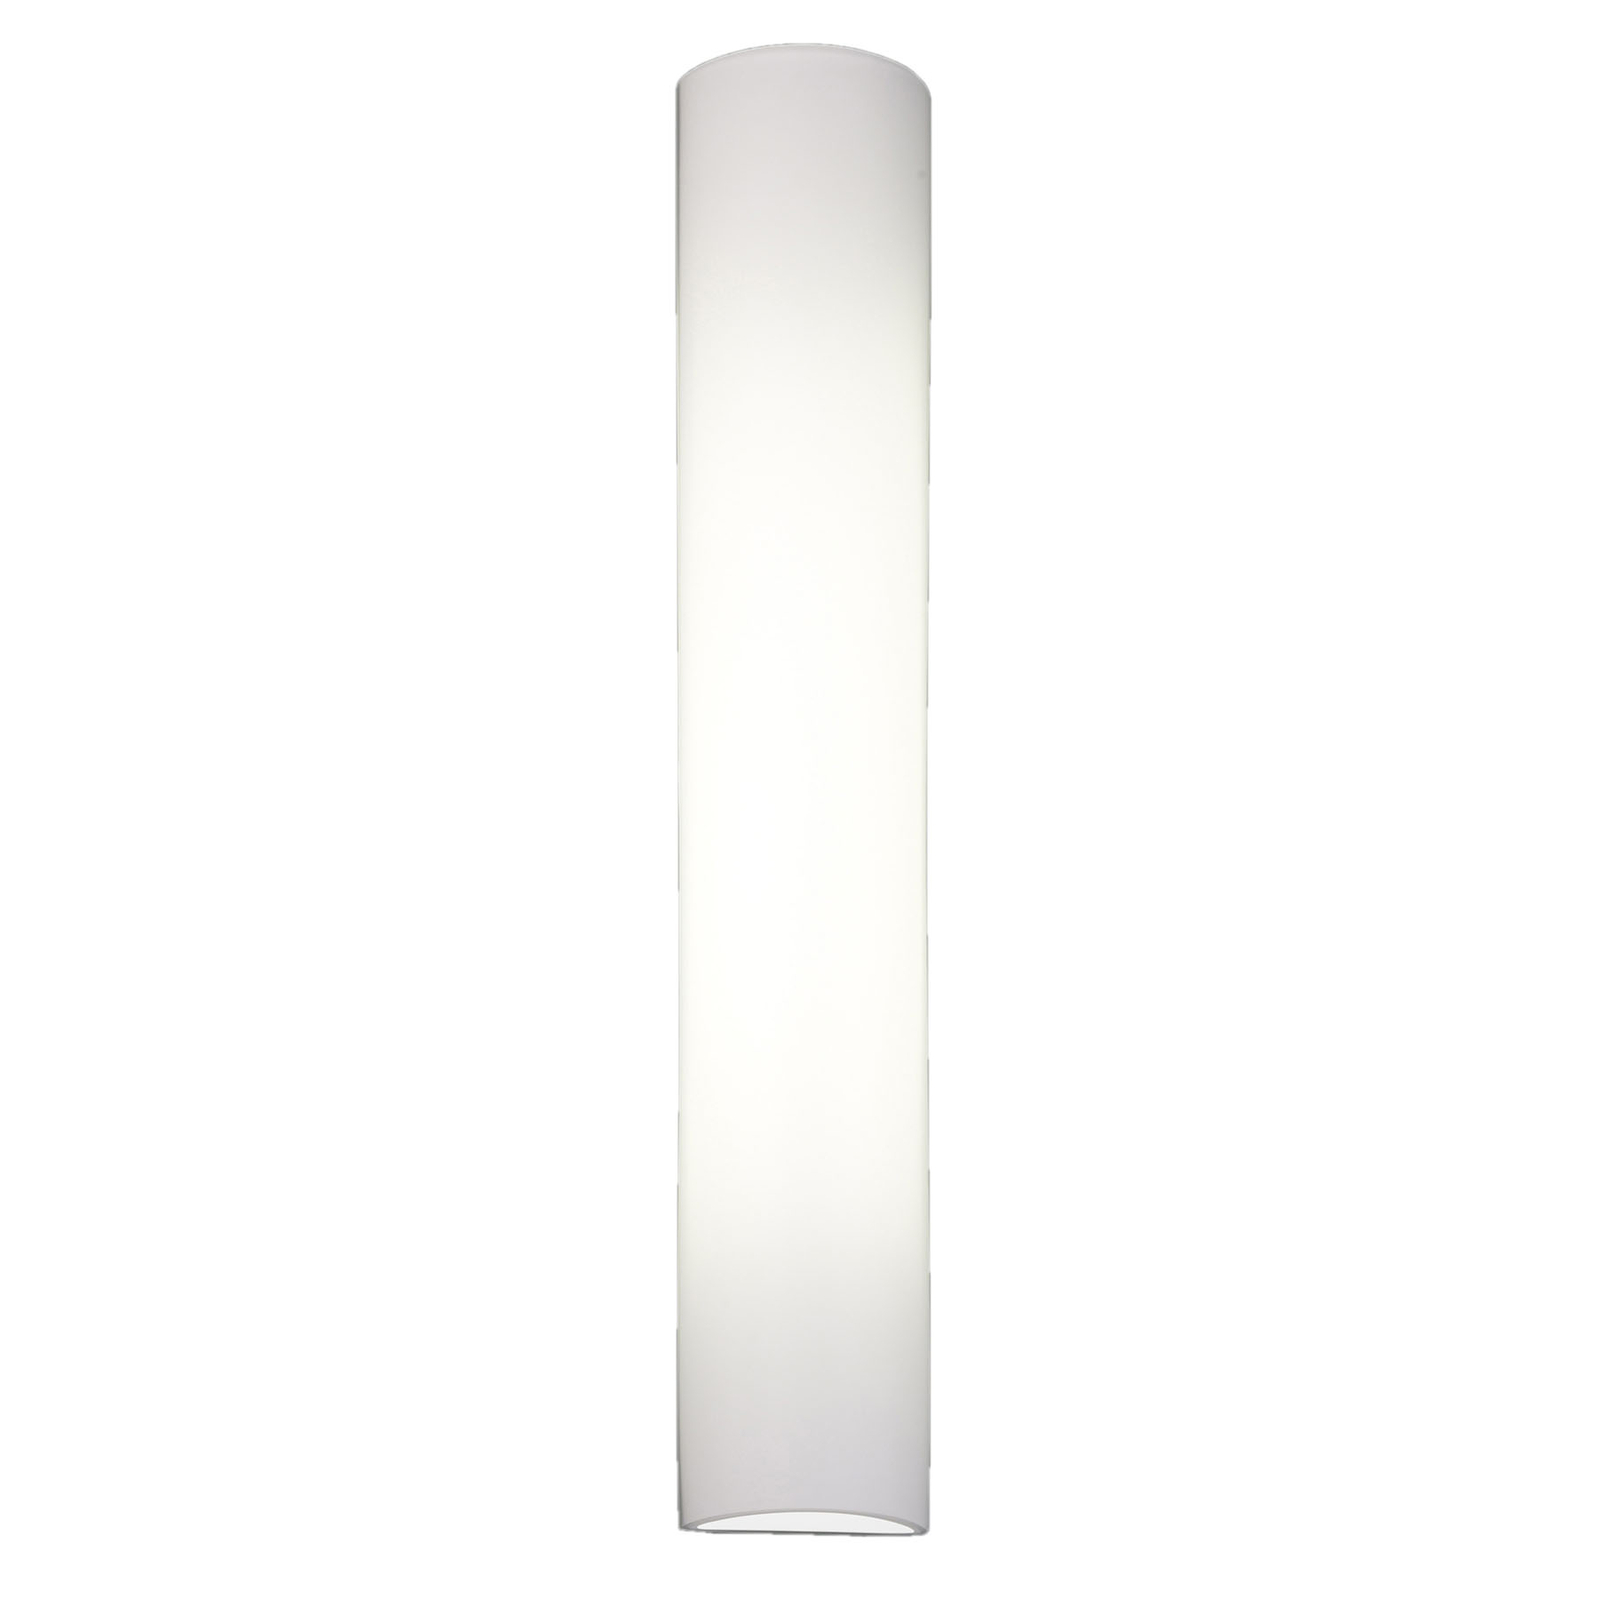 BANKAMP Cromo LED falilámpa üvegből, magasság 54cm